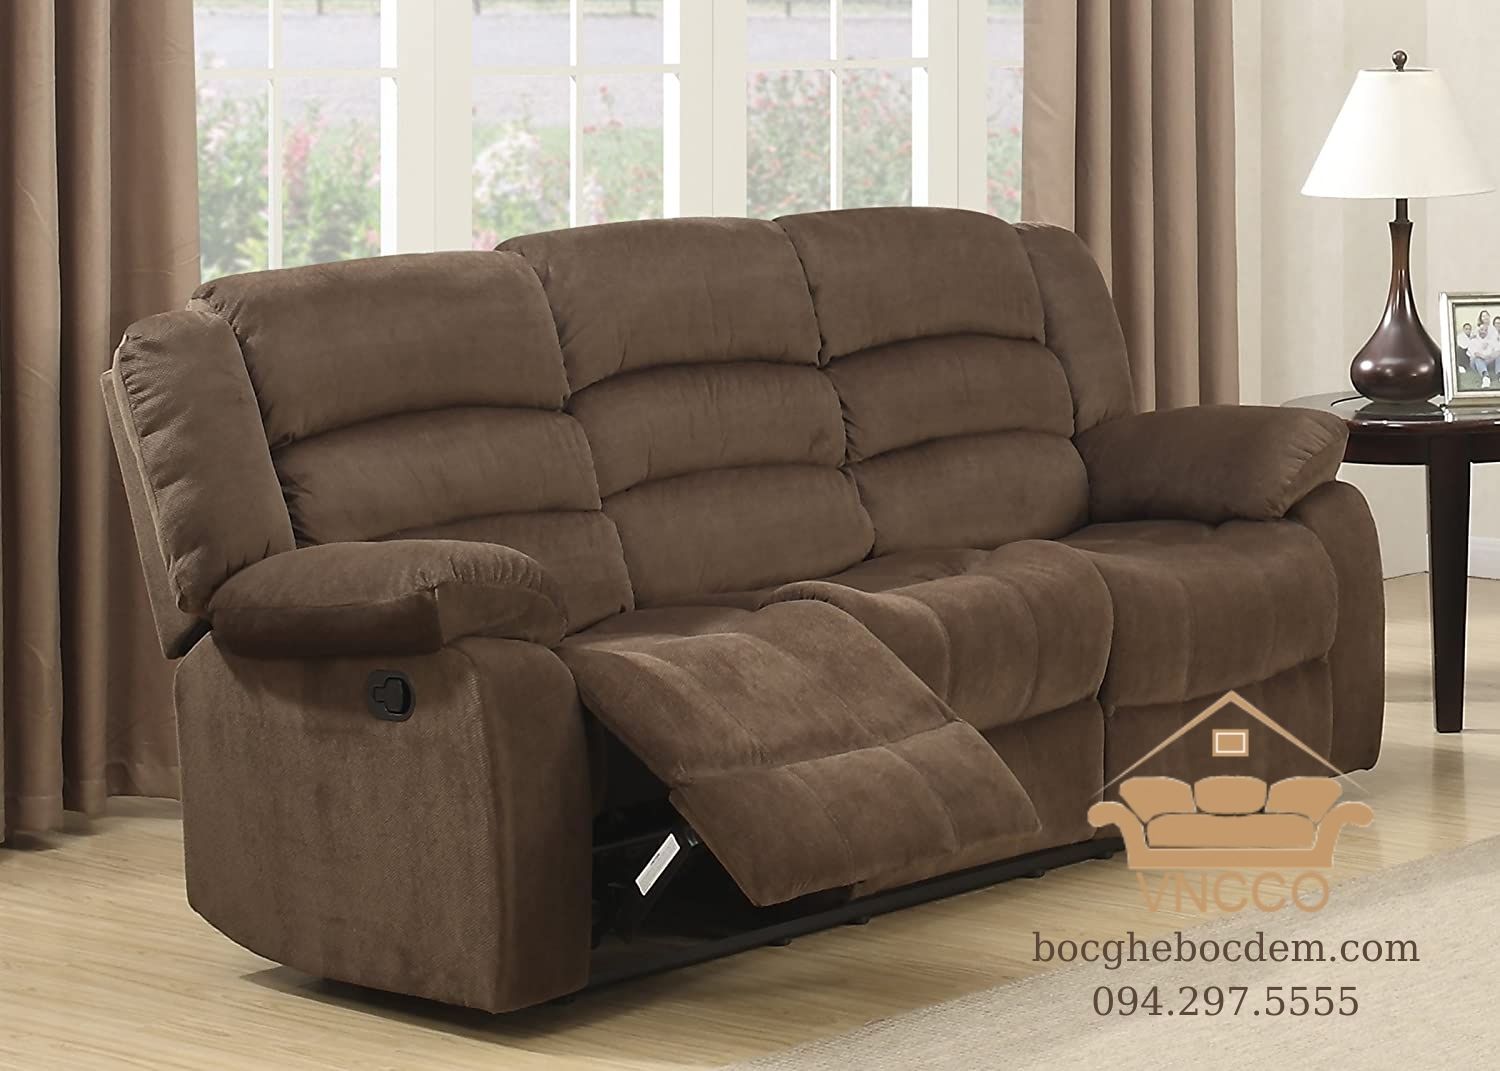 Lợi ích của một chiếc đệm ghế sofa có thể điều chỉnh mang đến cho bạn